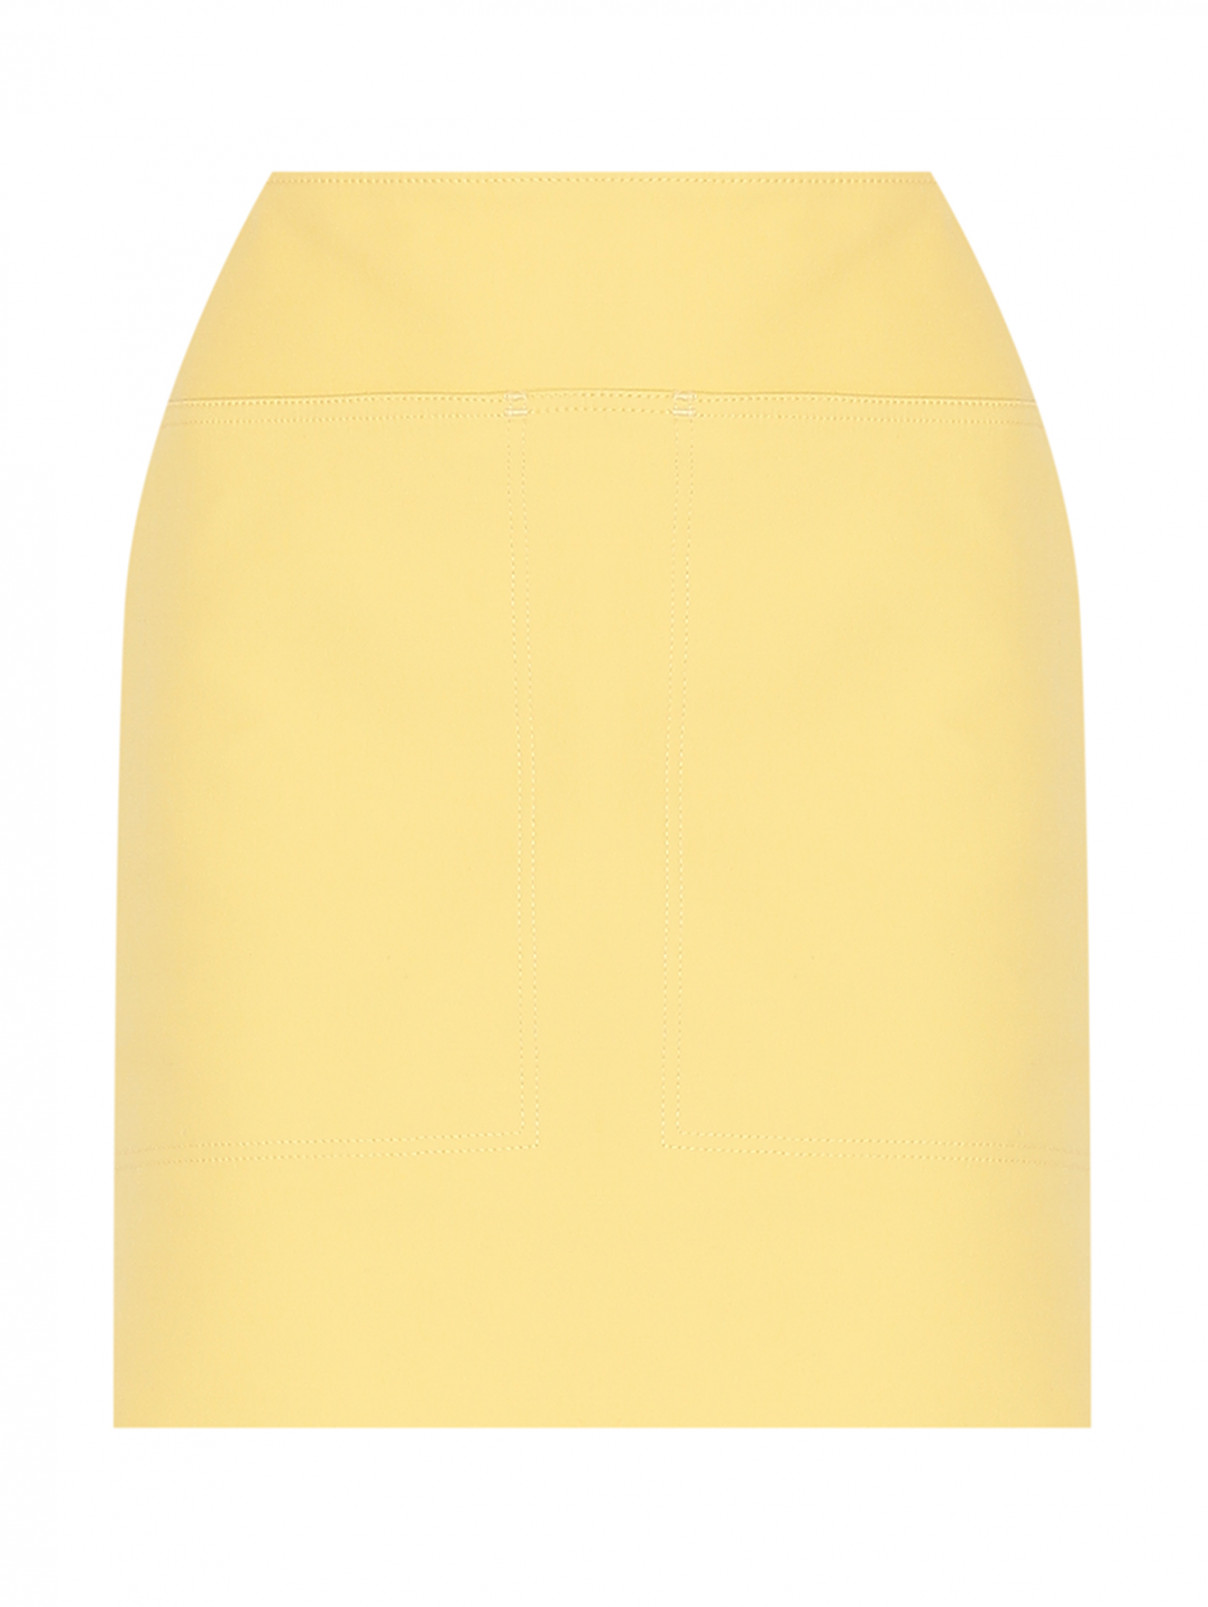 Юбка-мини из хлопка с карманами Max Mara  –  Общий вид  – Цвет:  Желтый